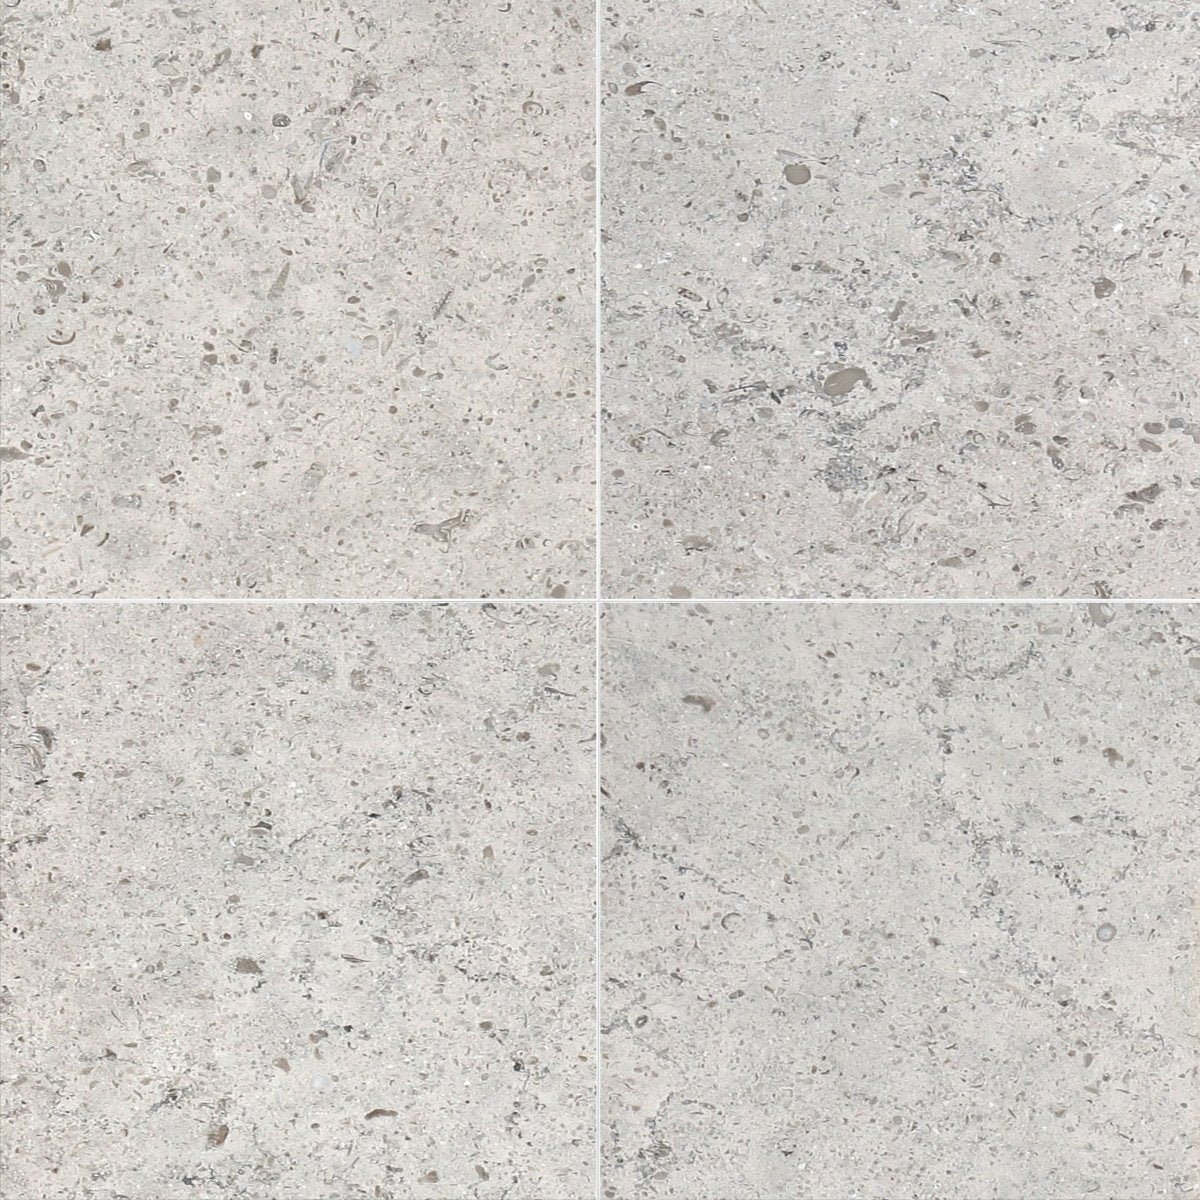 Gascogne Blue Honed Limestone Field Tile 12''x12''x3/8''